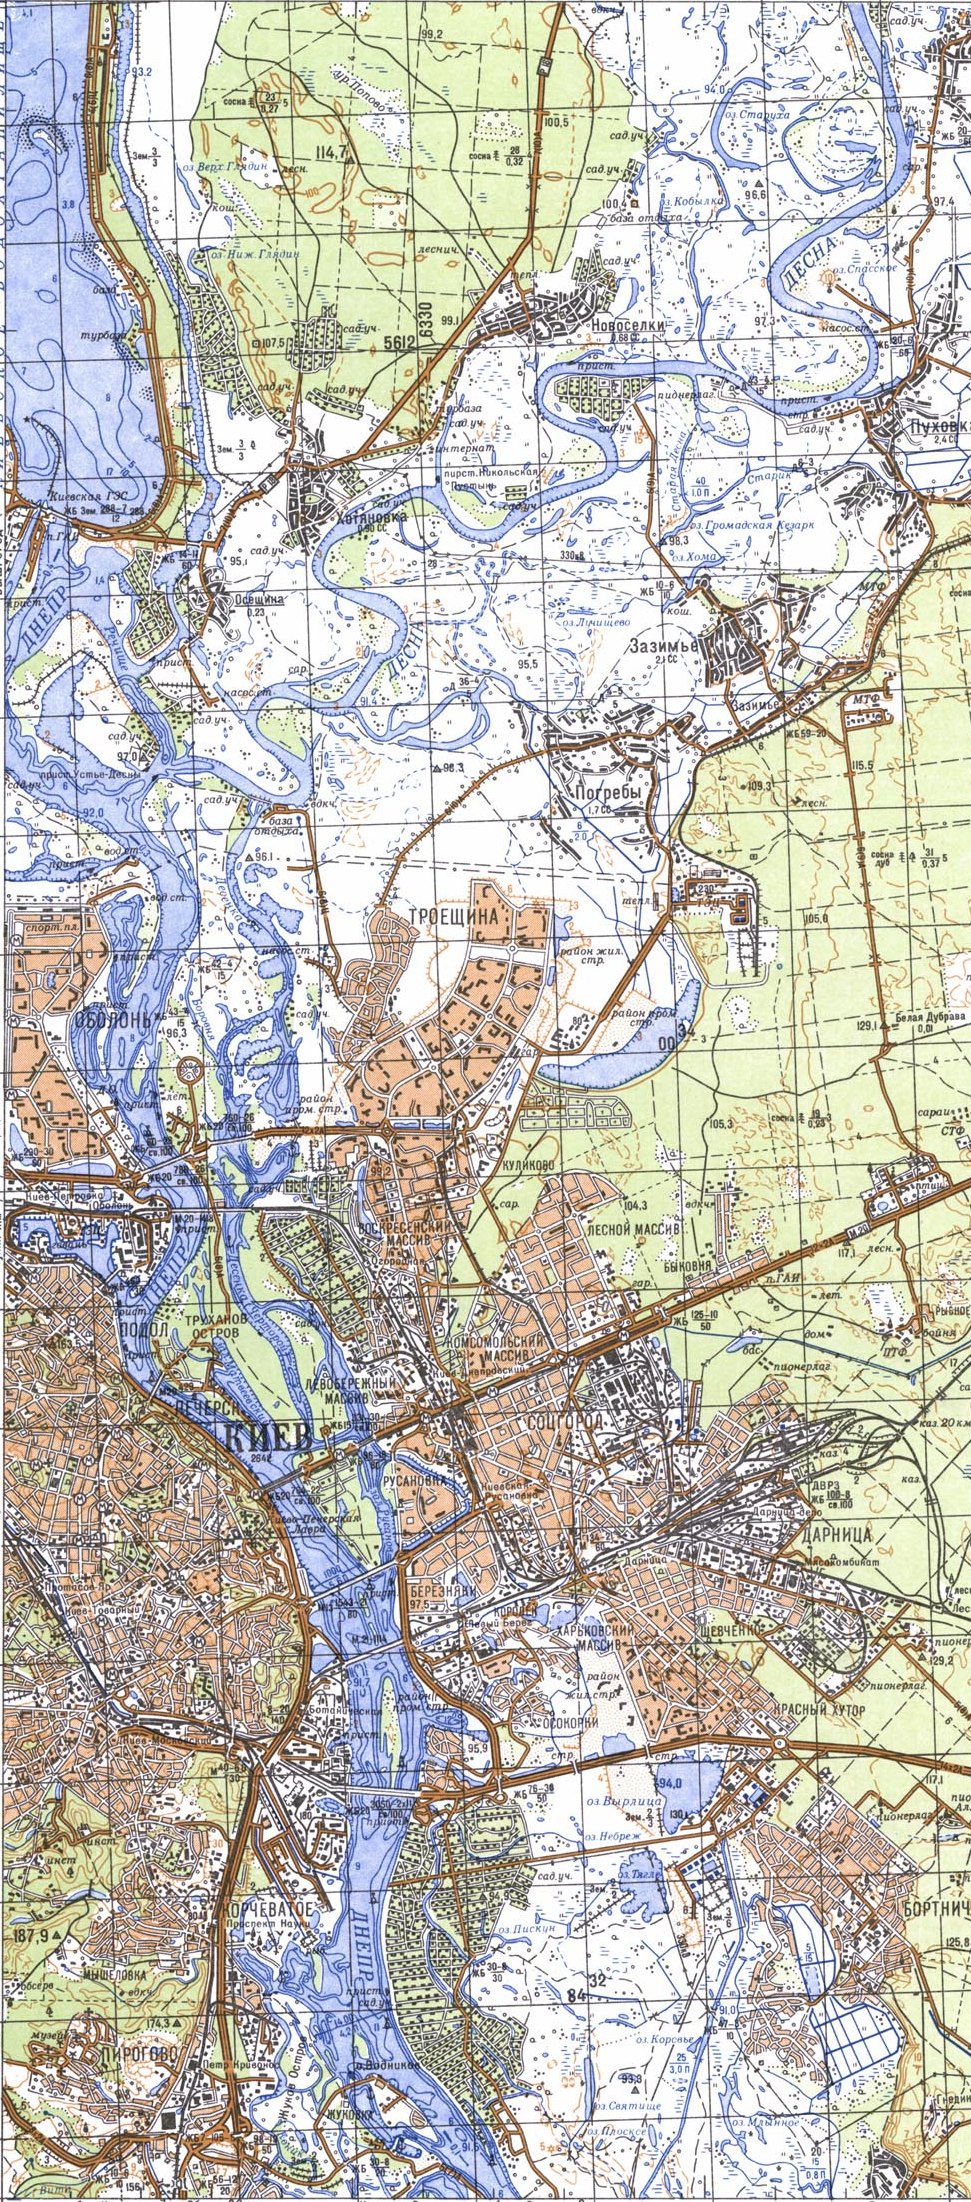 Глубины Днепра в районе Киева. Масштаб 1 см 250 м. Глубины 1989